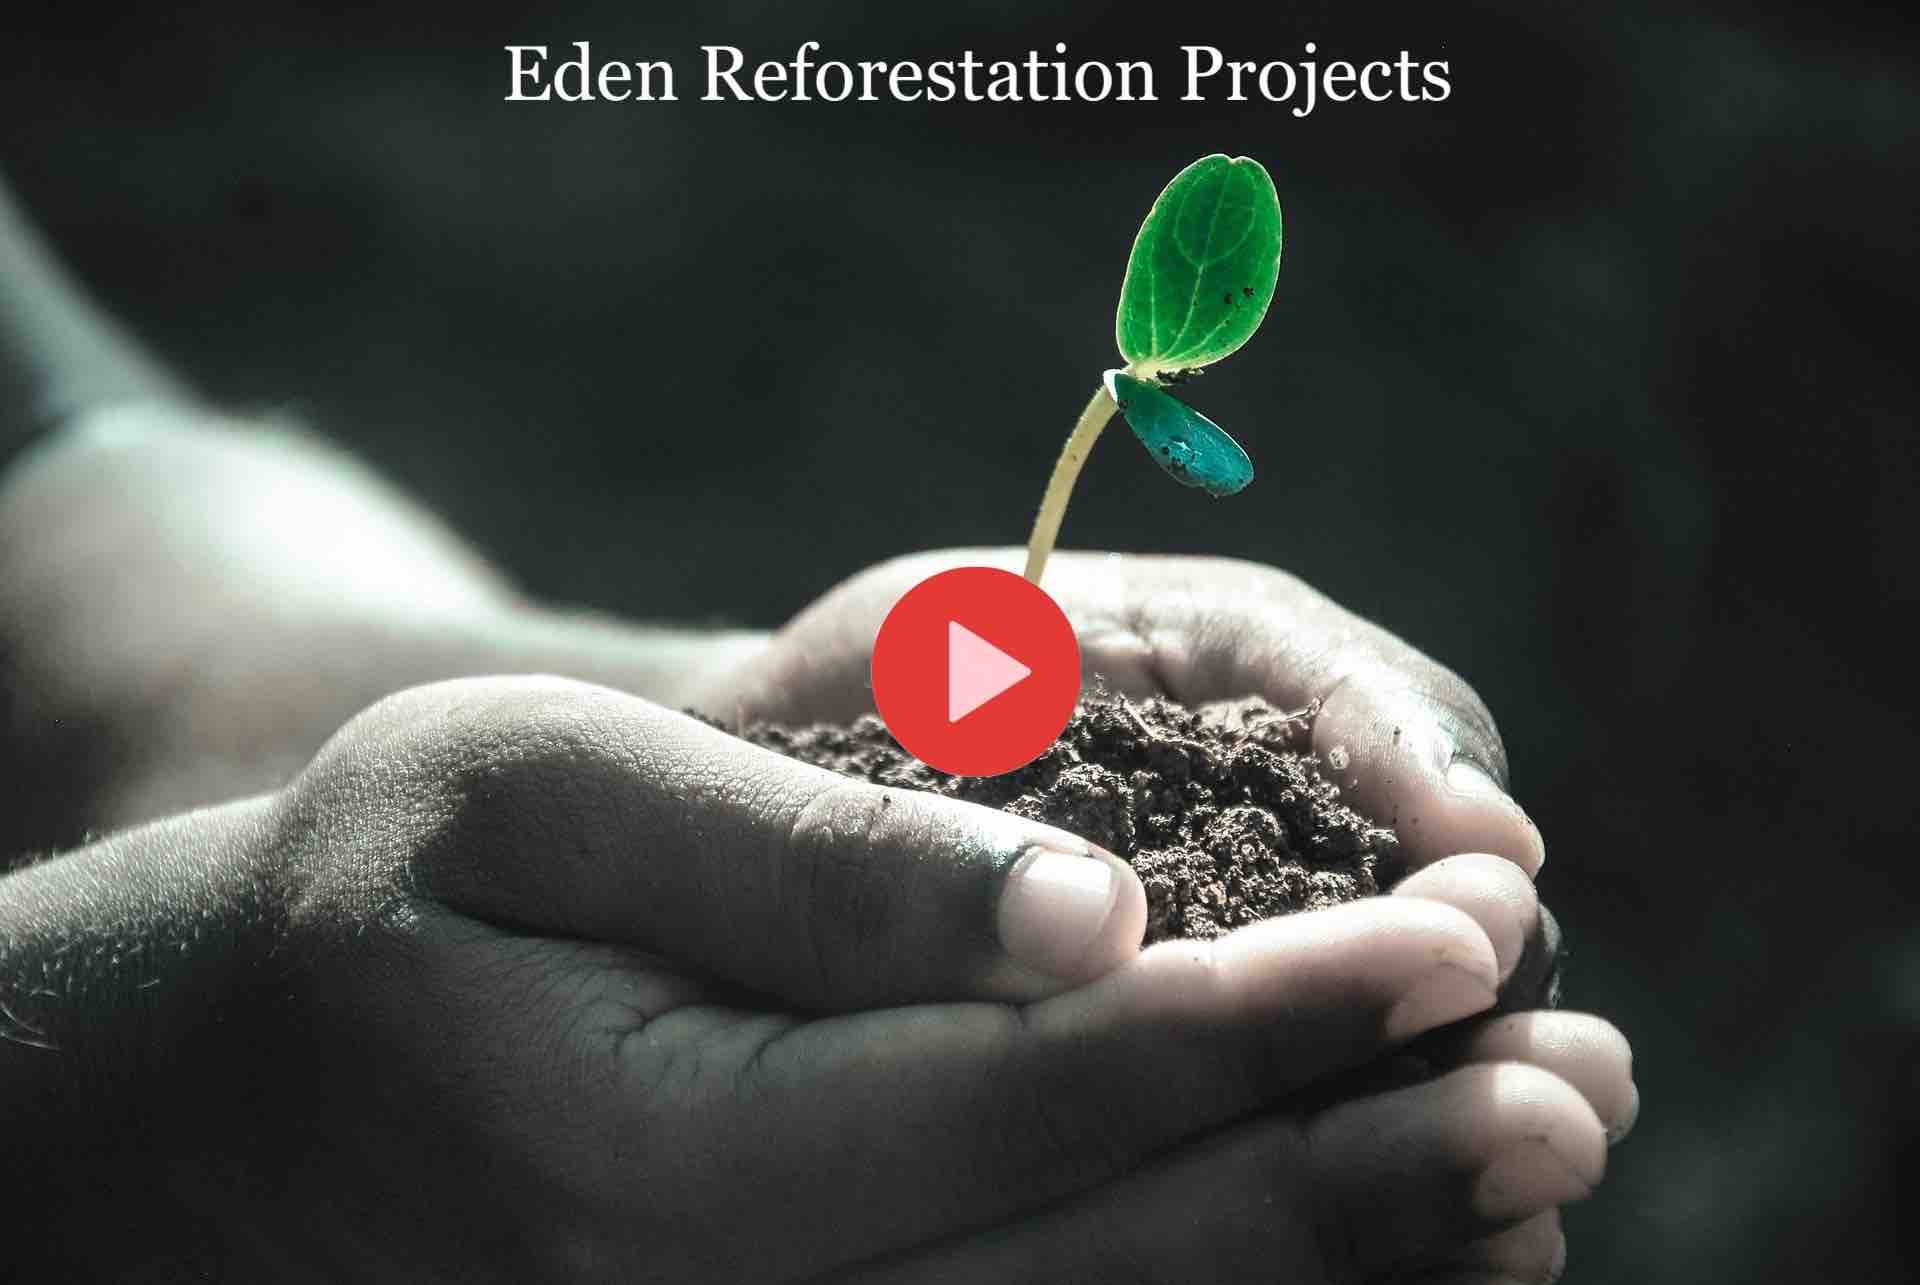 Eden Reforestation Project